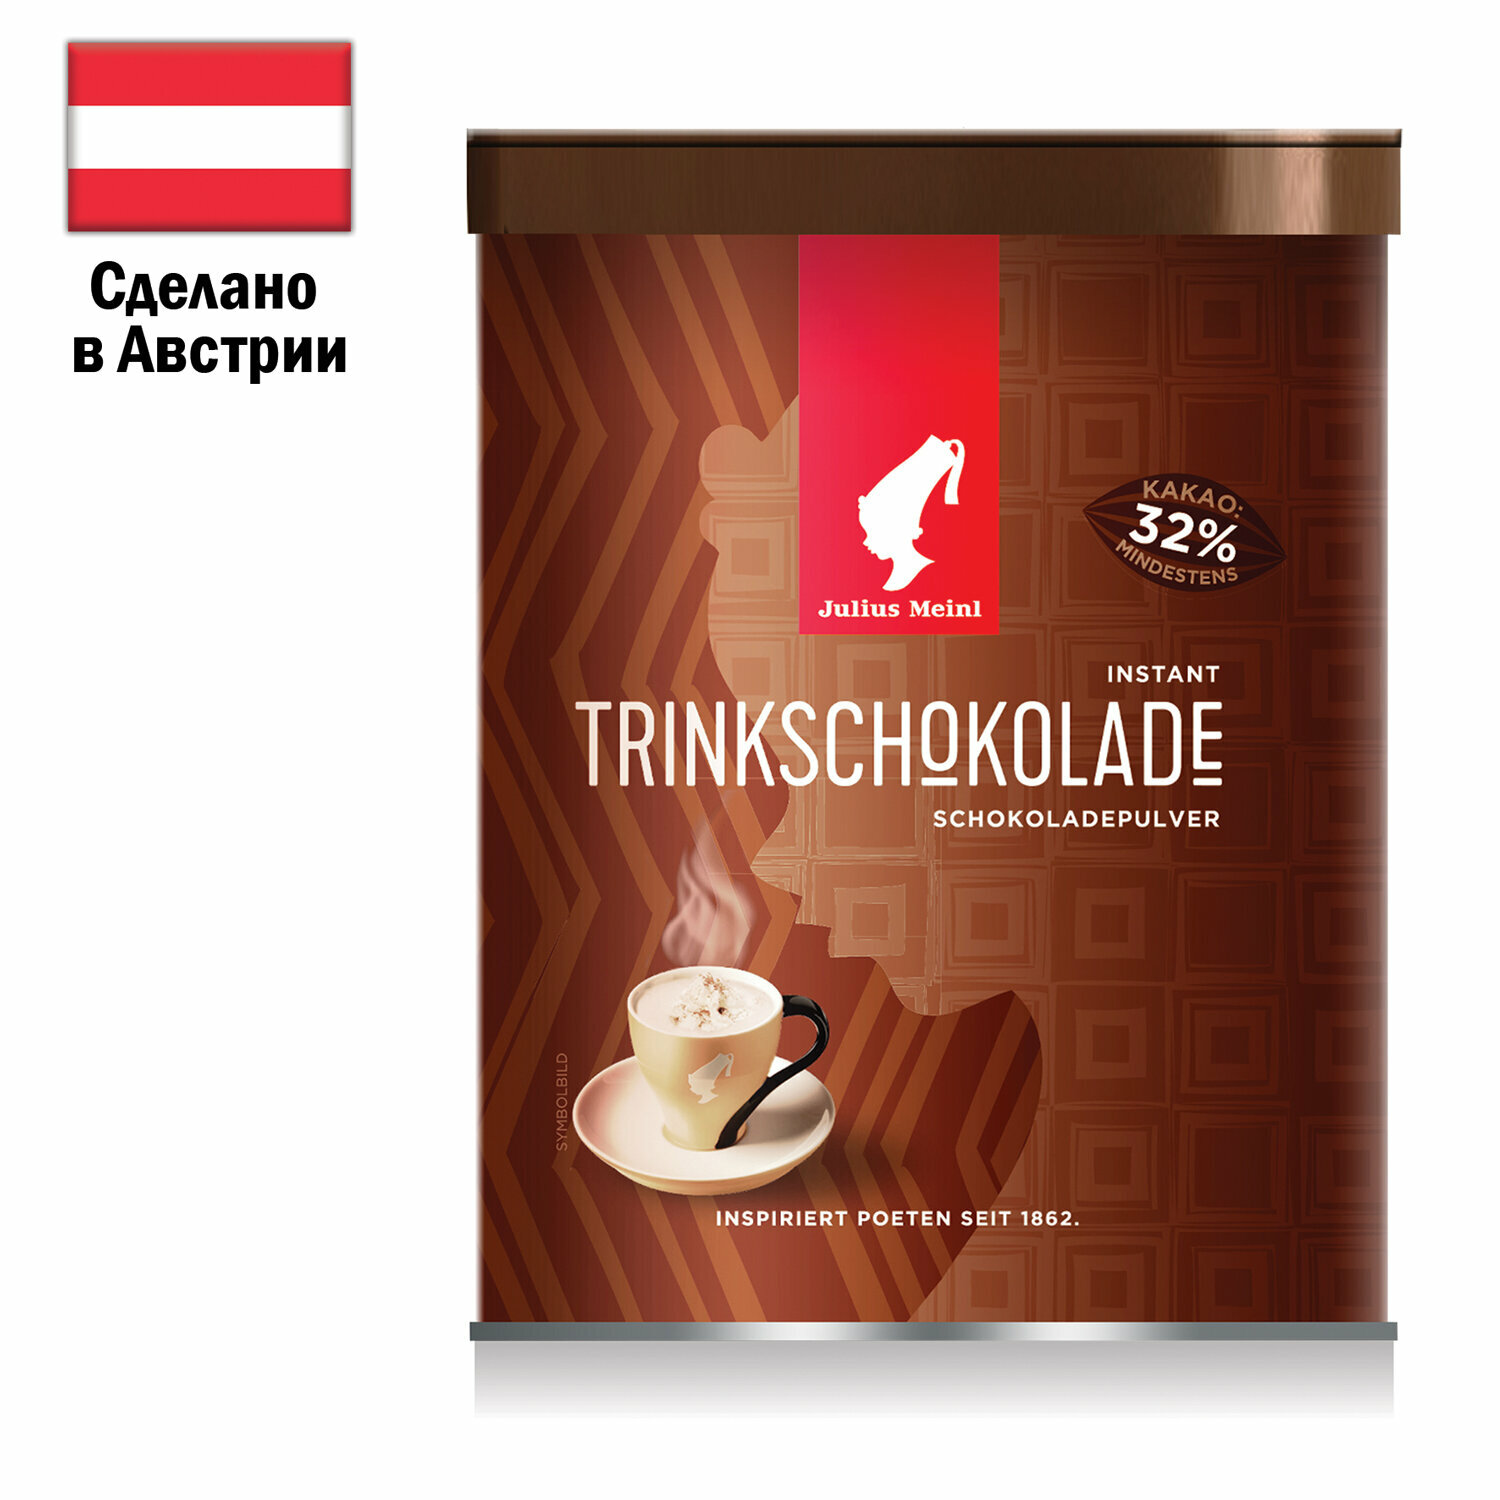 Горячий шоколад JULIUS MEINL «Trinkschokolade», банка 300 г, австрия - фотография № 1